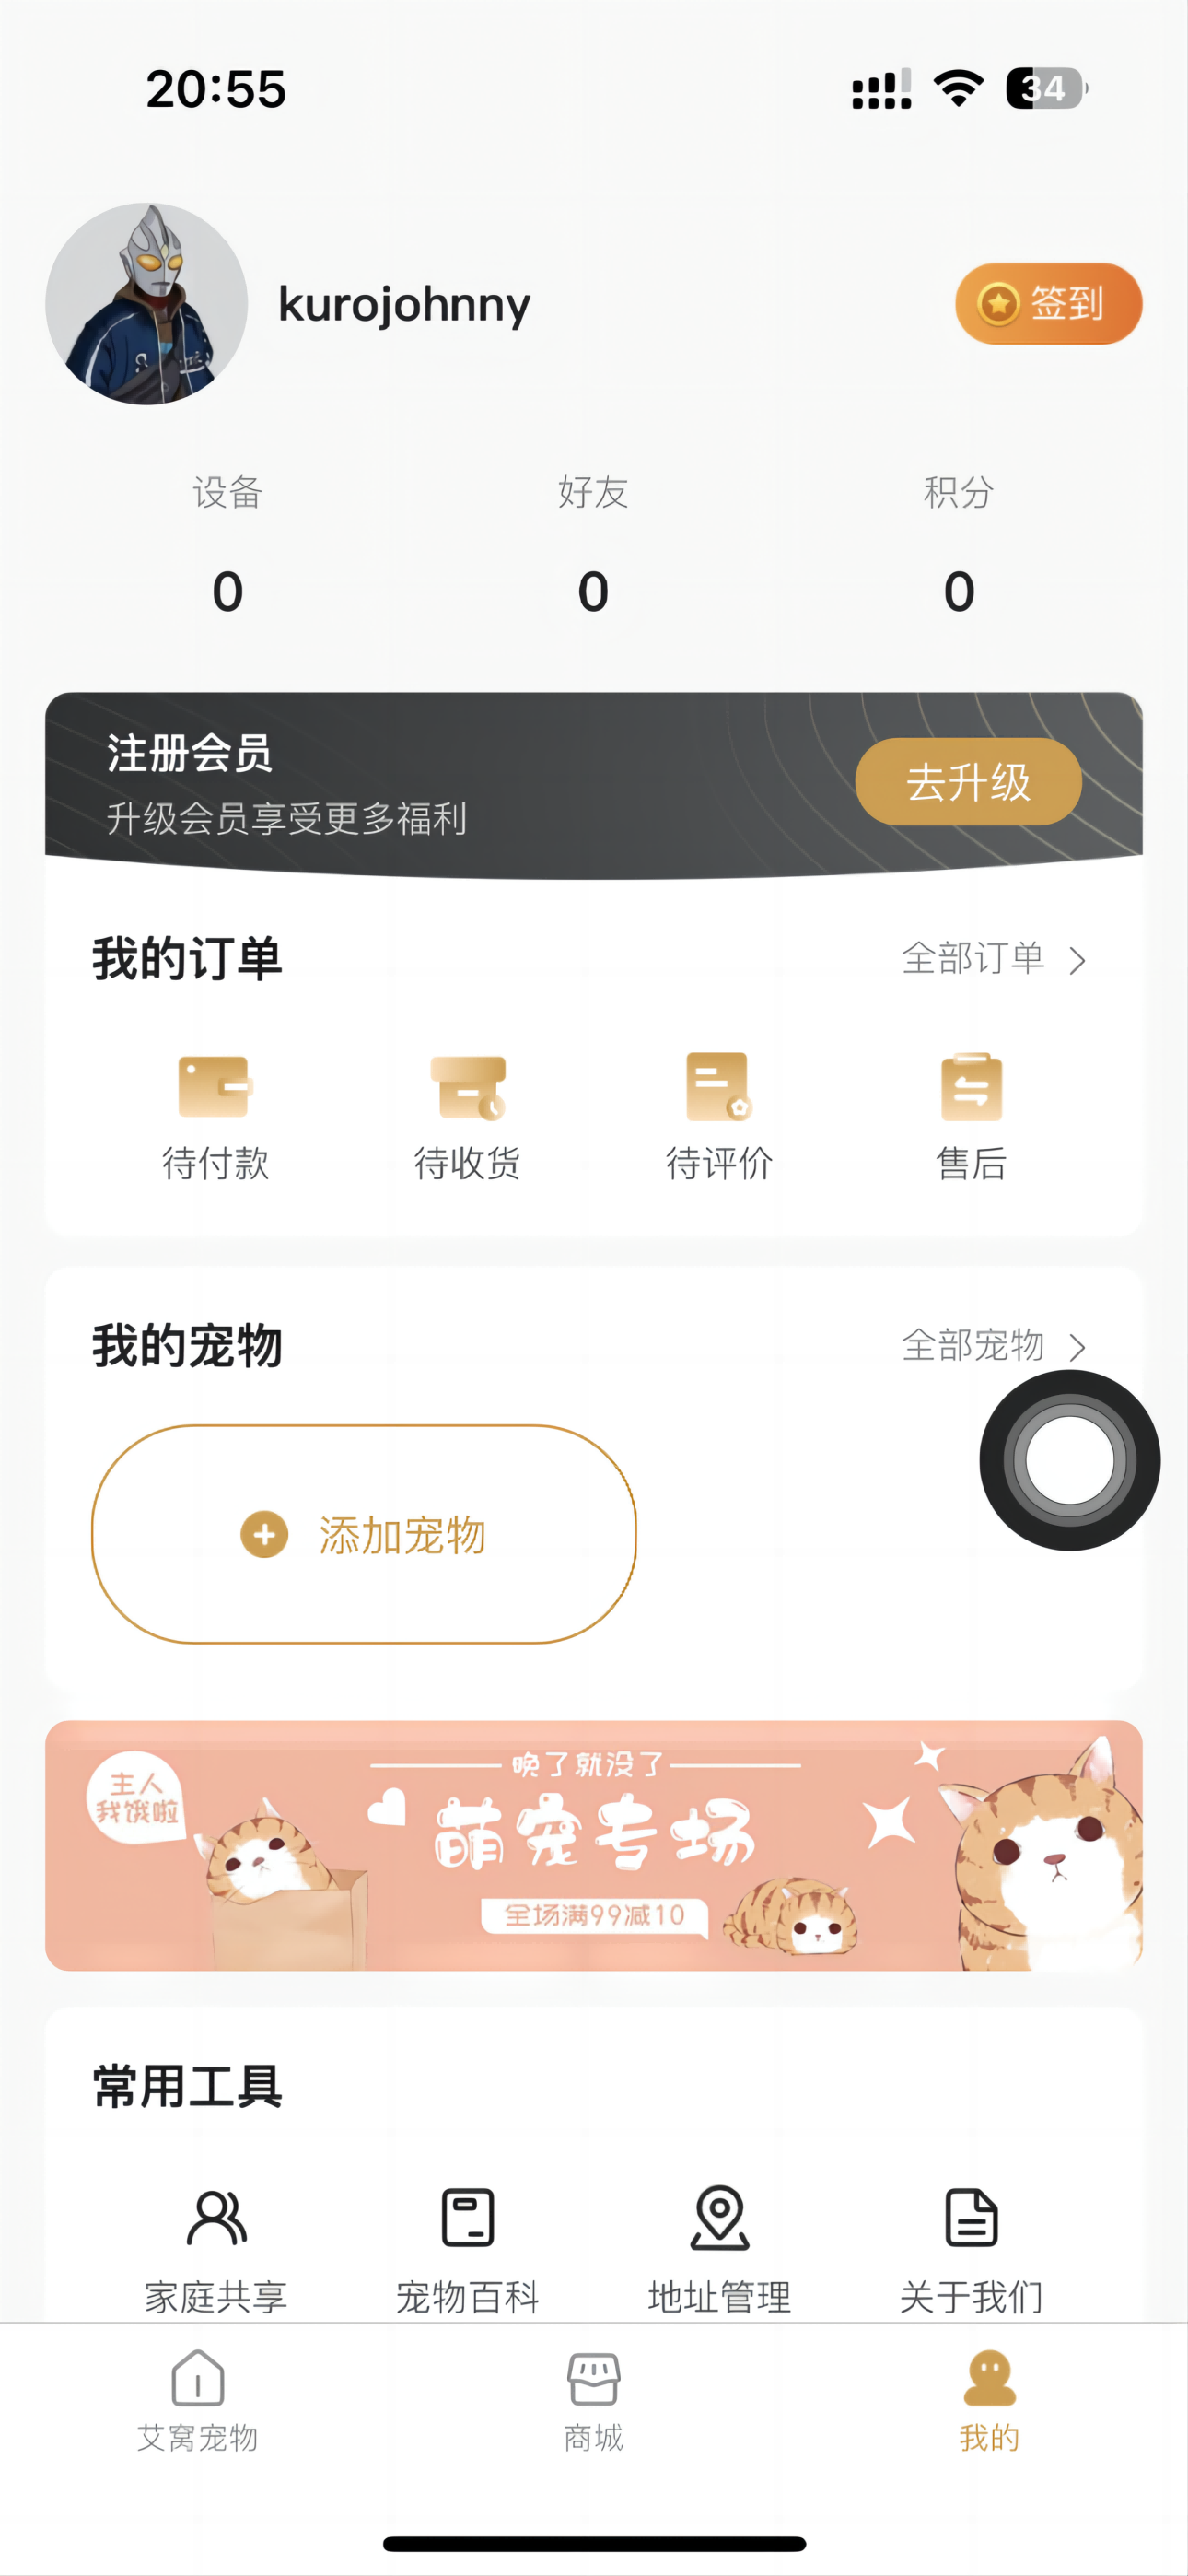 深圳app开发公司